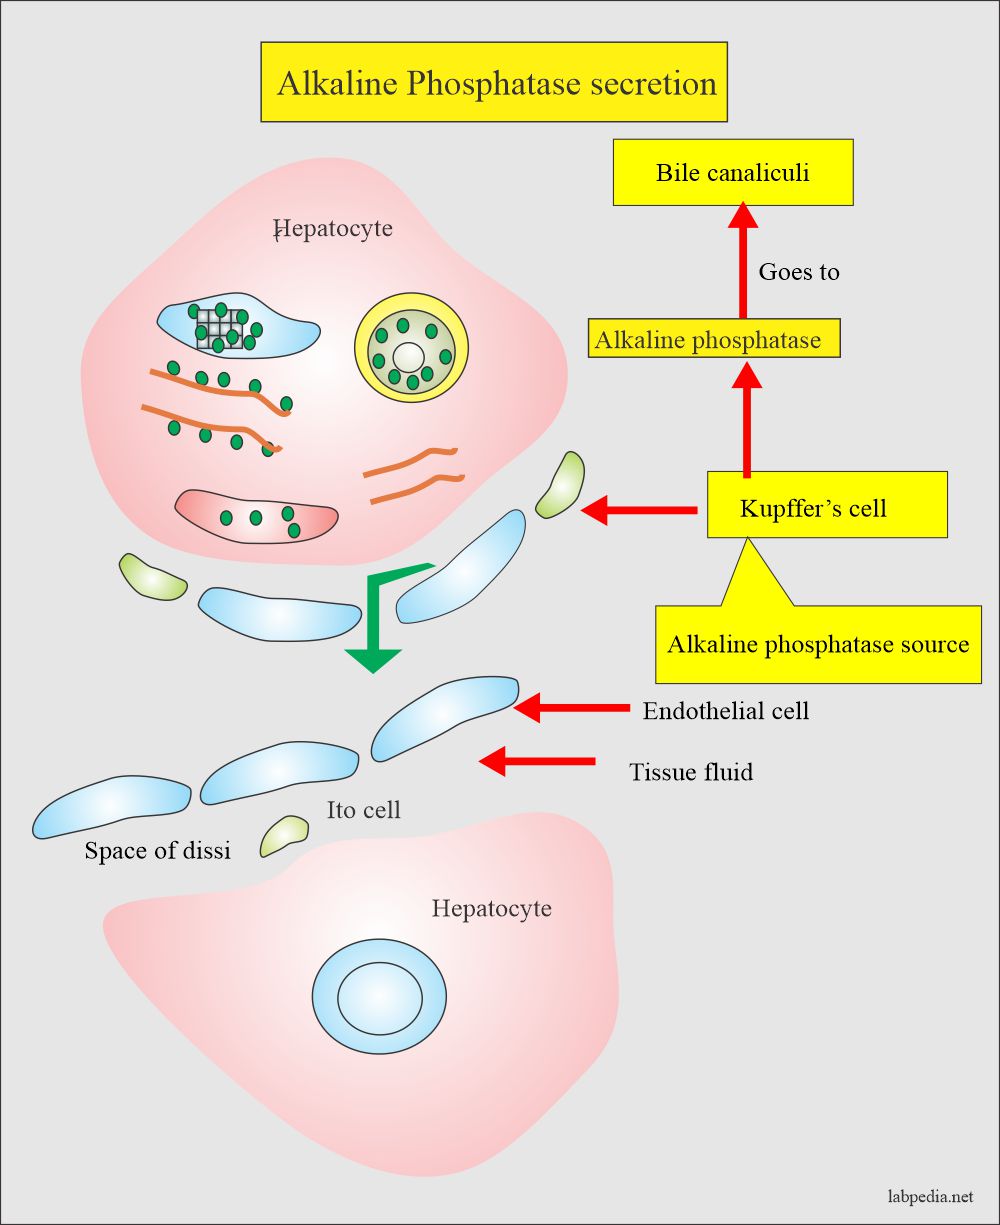 Tumor Markers: Alkaline phosphatase secretion in bile